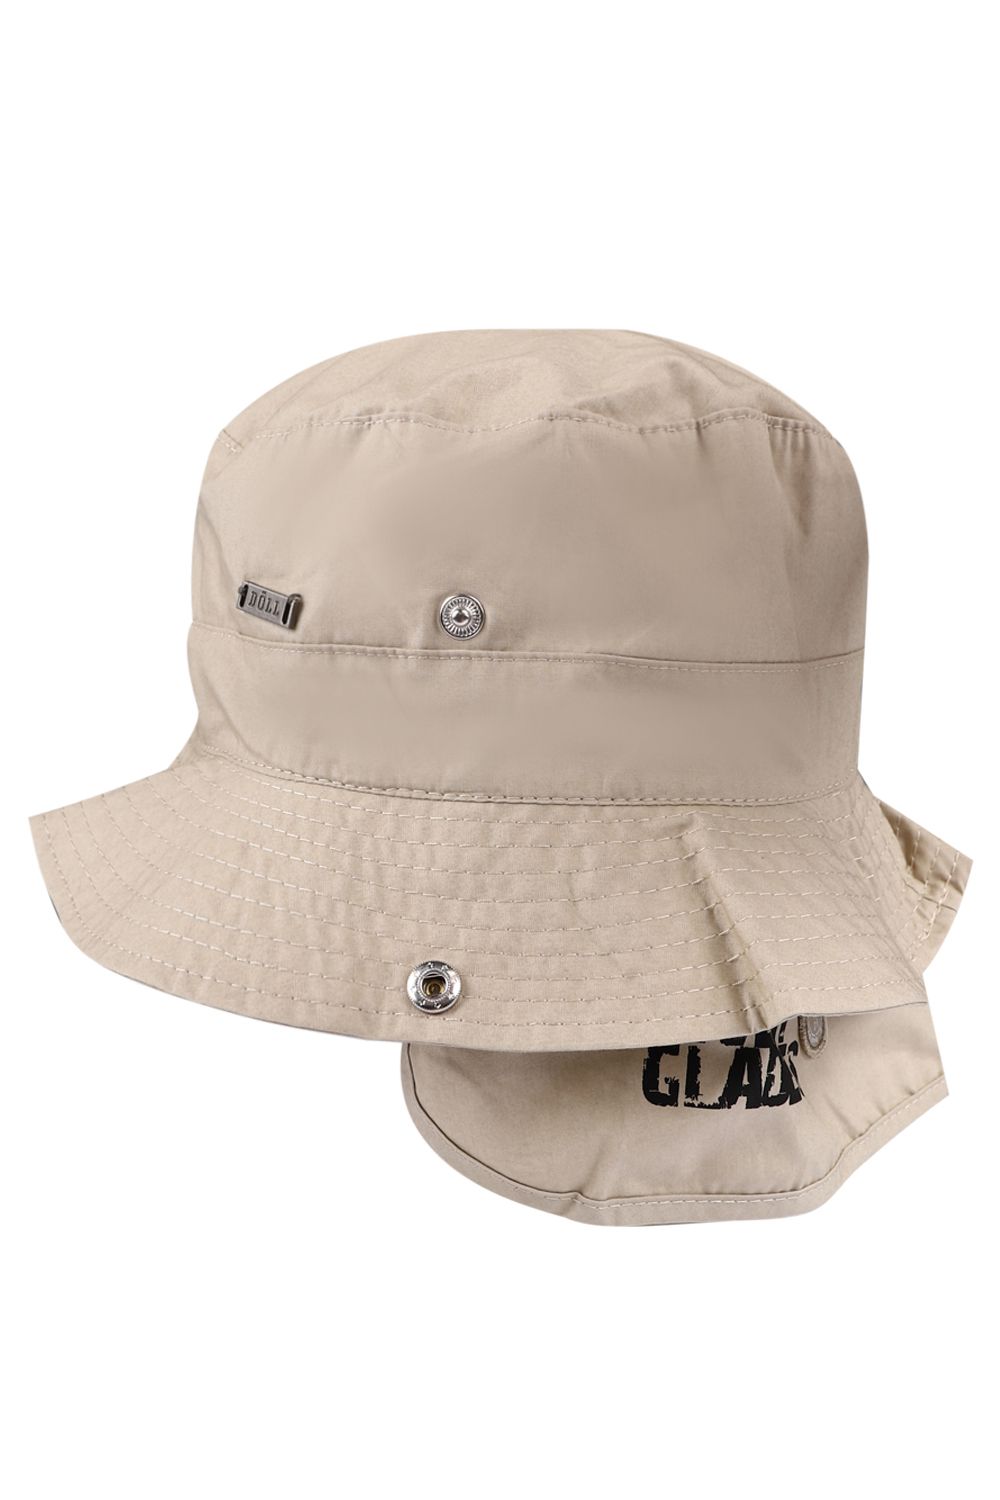 Шляпа Doell, размер 55, цвет бежевый